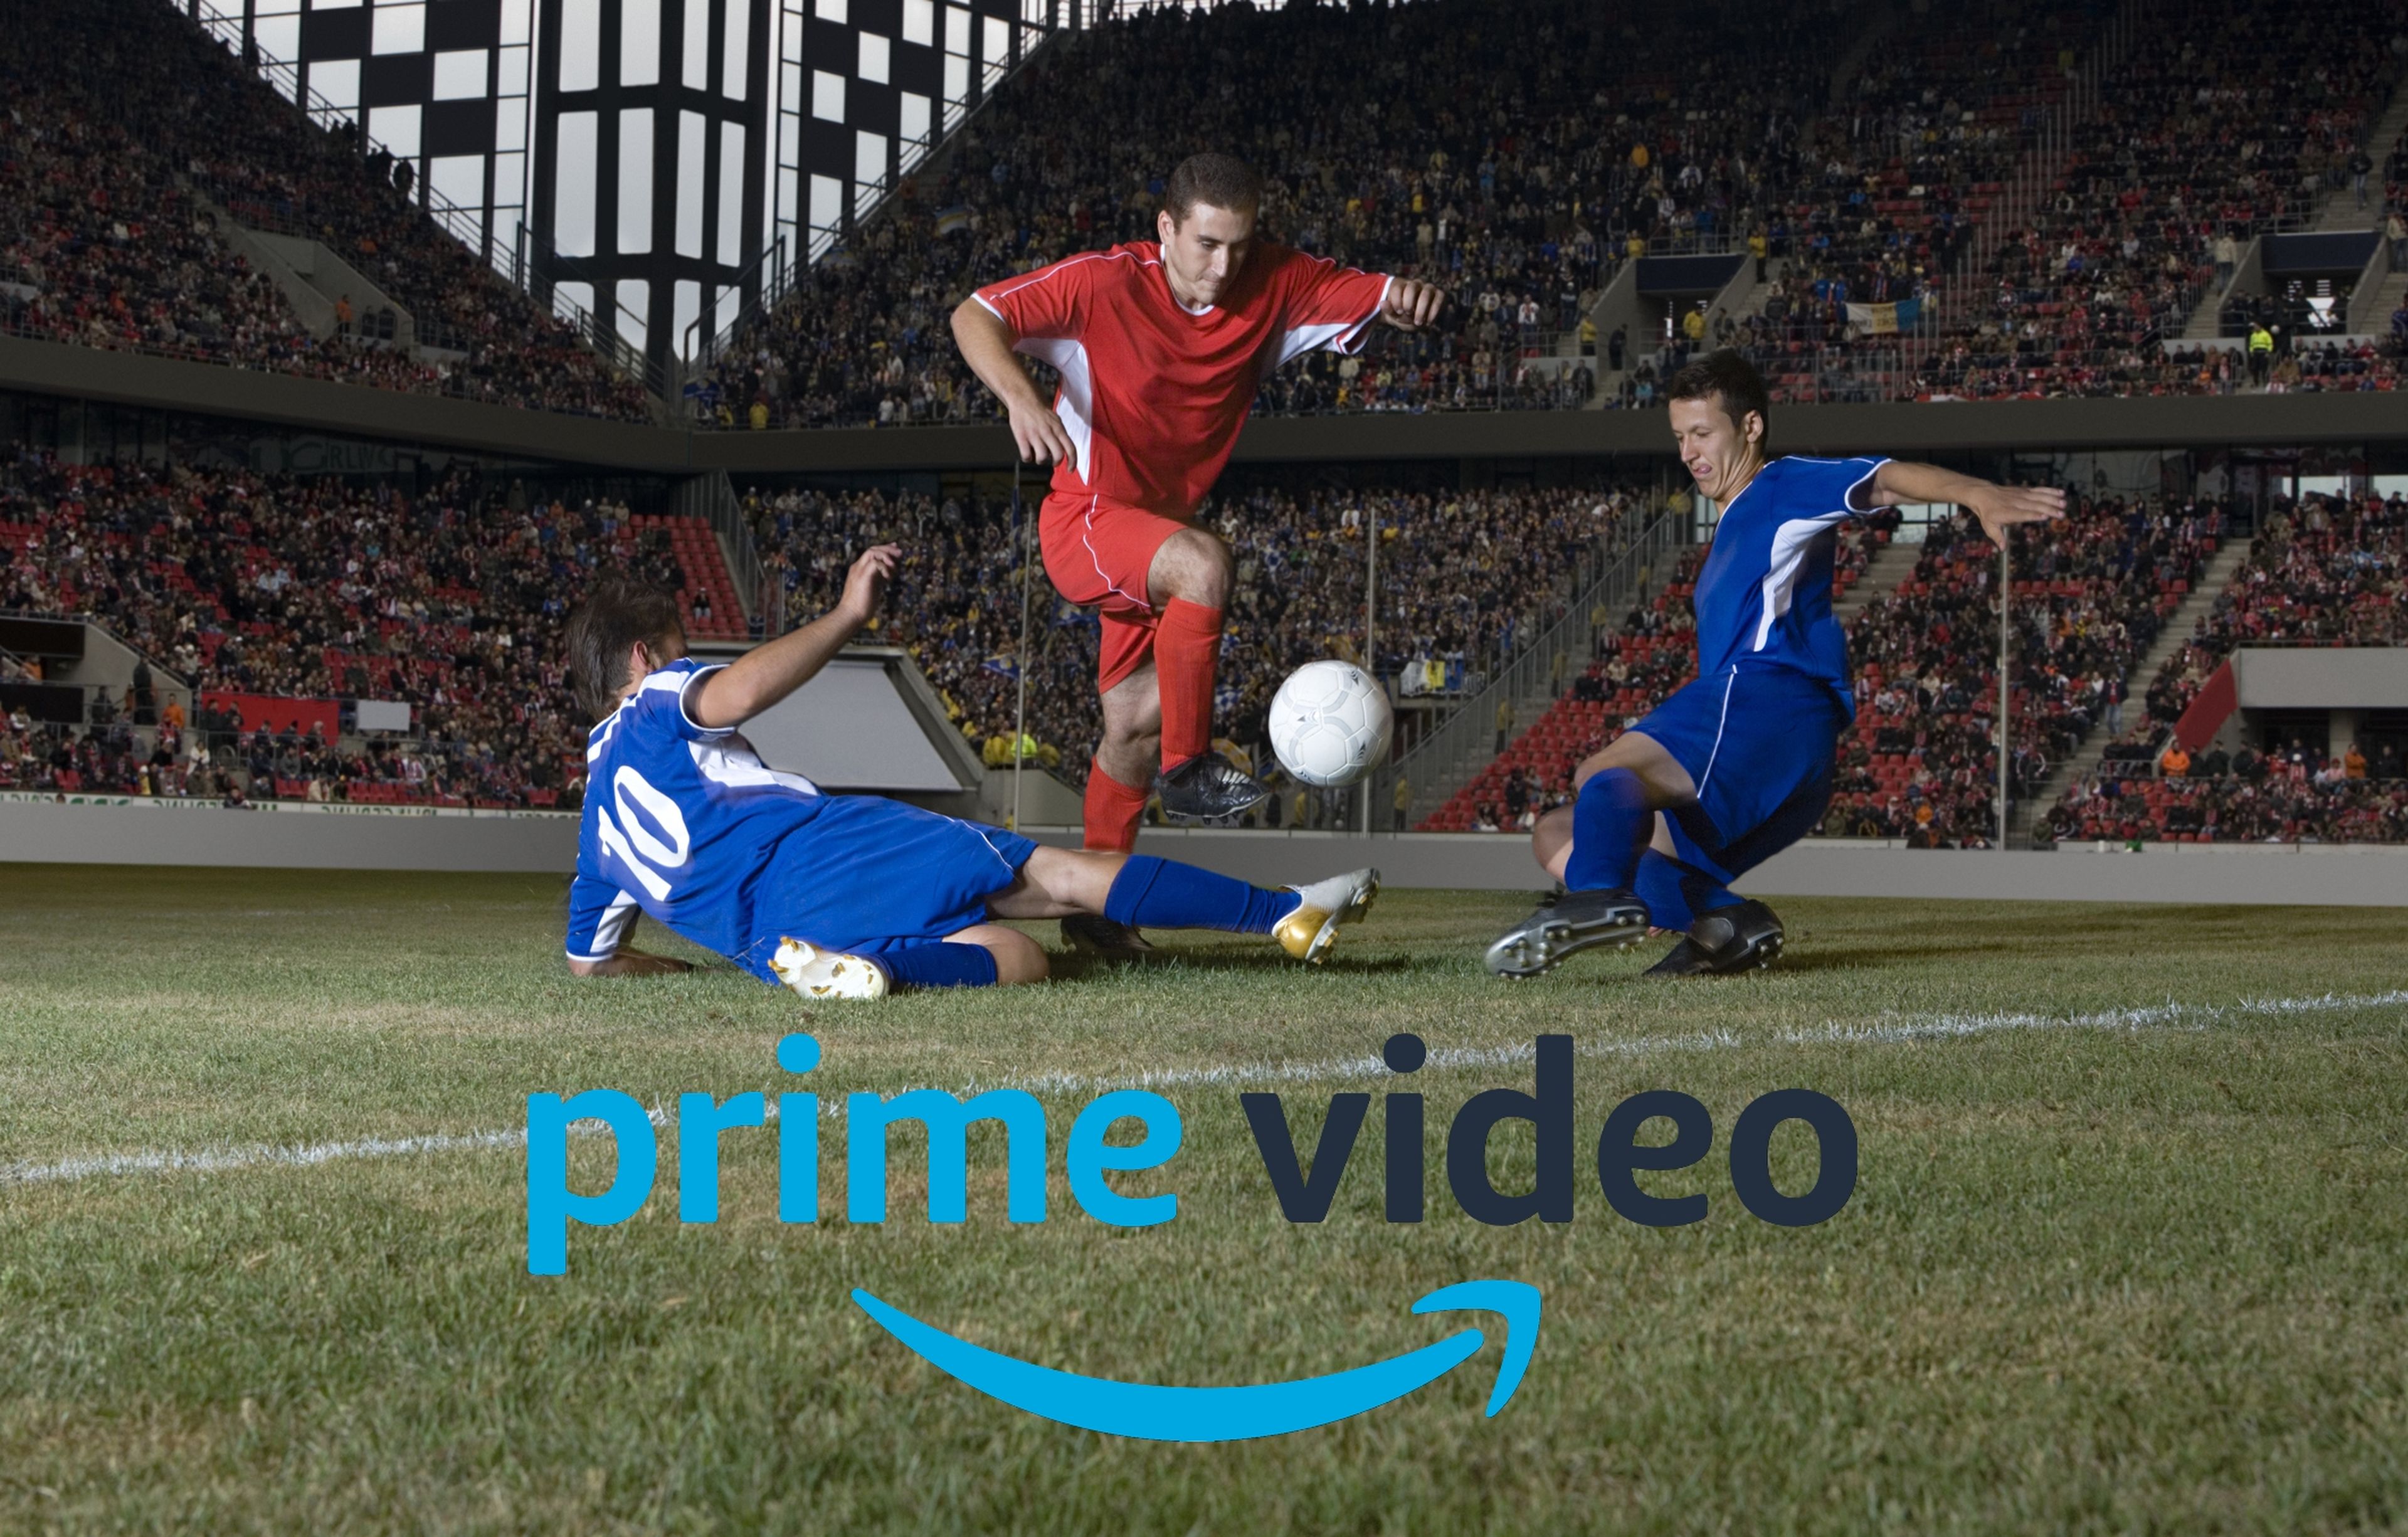 Como predijimos hace meses, la Liga de Fútbol española llega a Prime Video